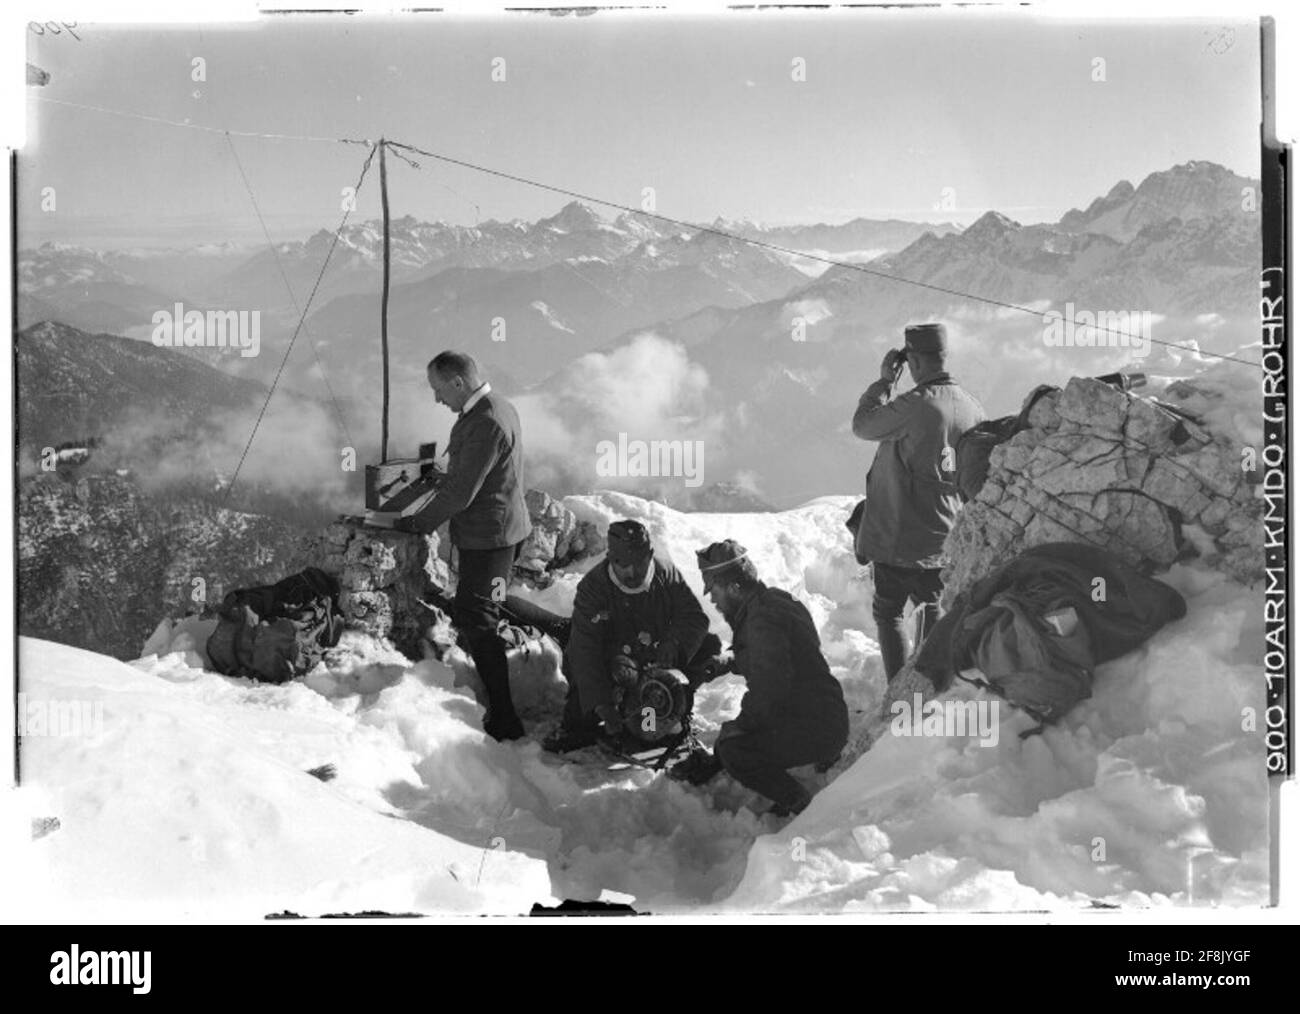 Tragbarer Radiosender (Rucksackstation), der eine Nachricht über Gisnitz Julische Alpen, Montasch sendet; Fotograf: 10. Armeecommando Rohr. Stockfoto